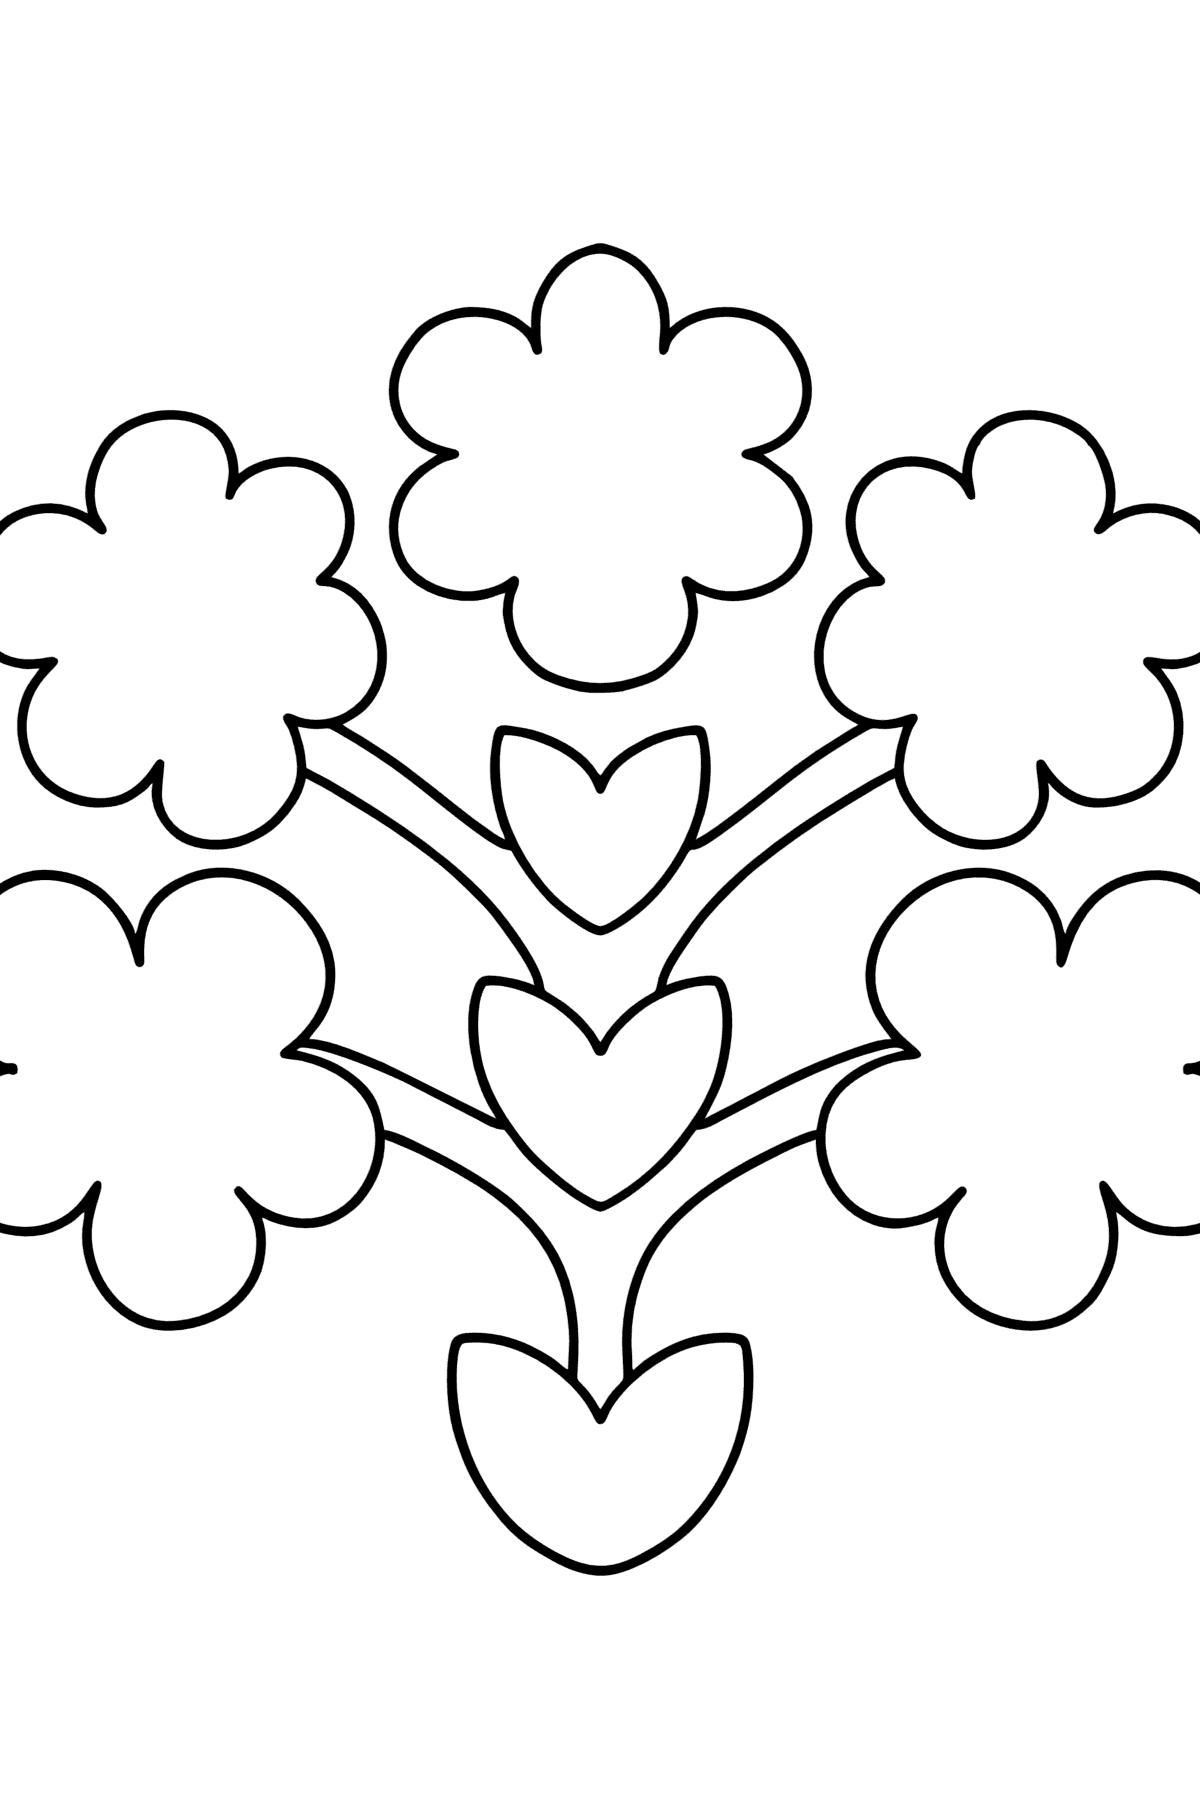 Раскраска цветочный узор в стиле Зентангл - Картинки для Детей